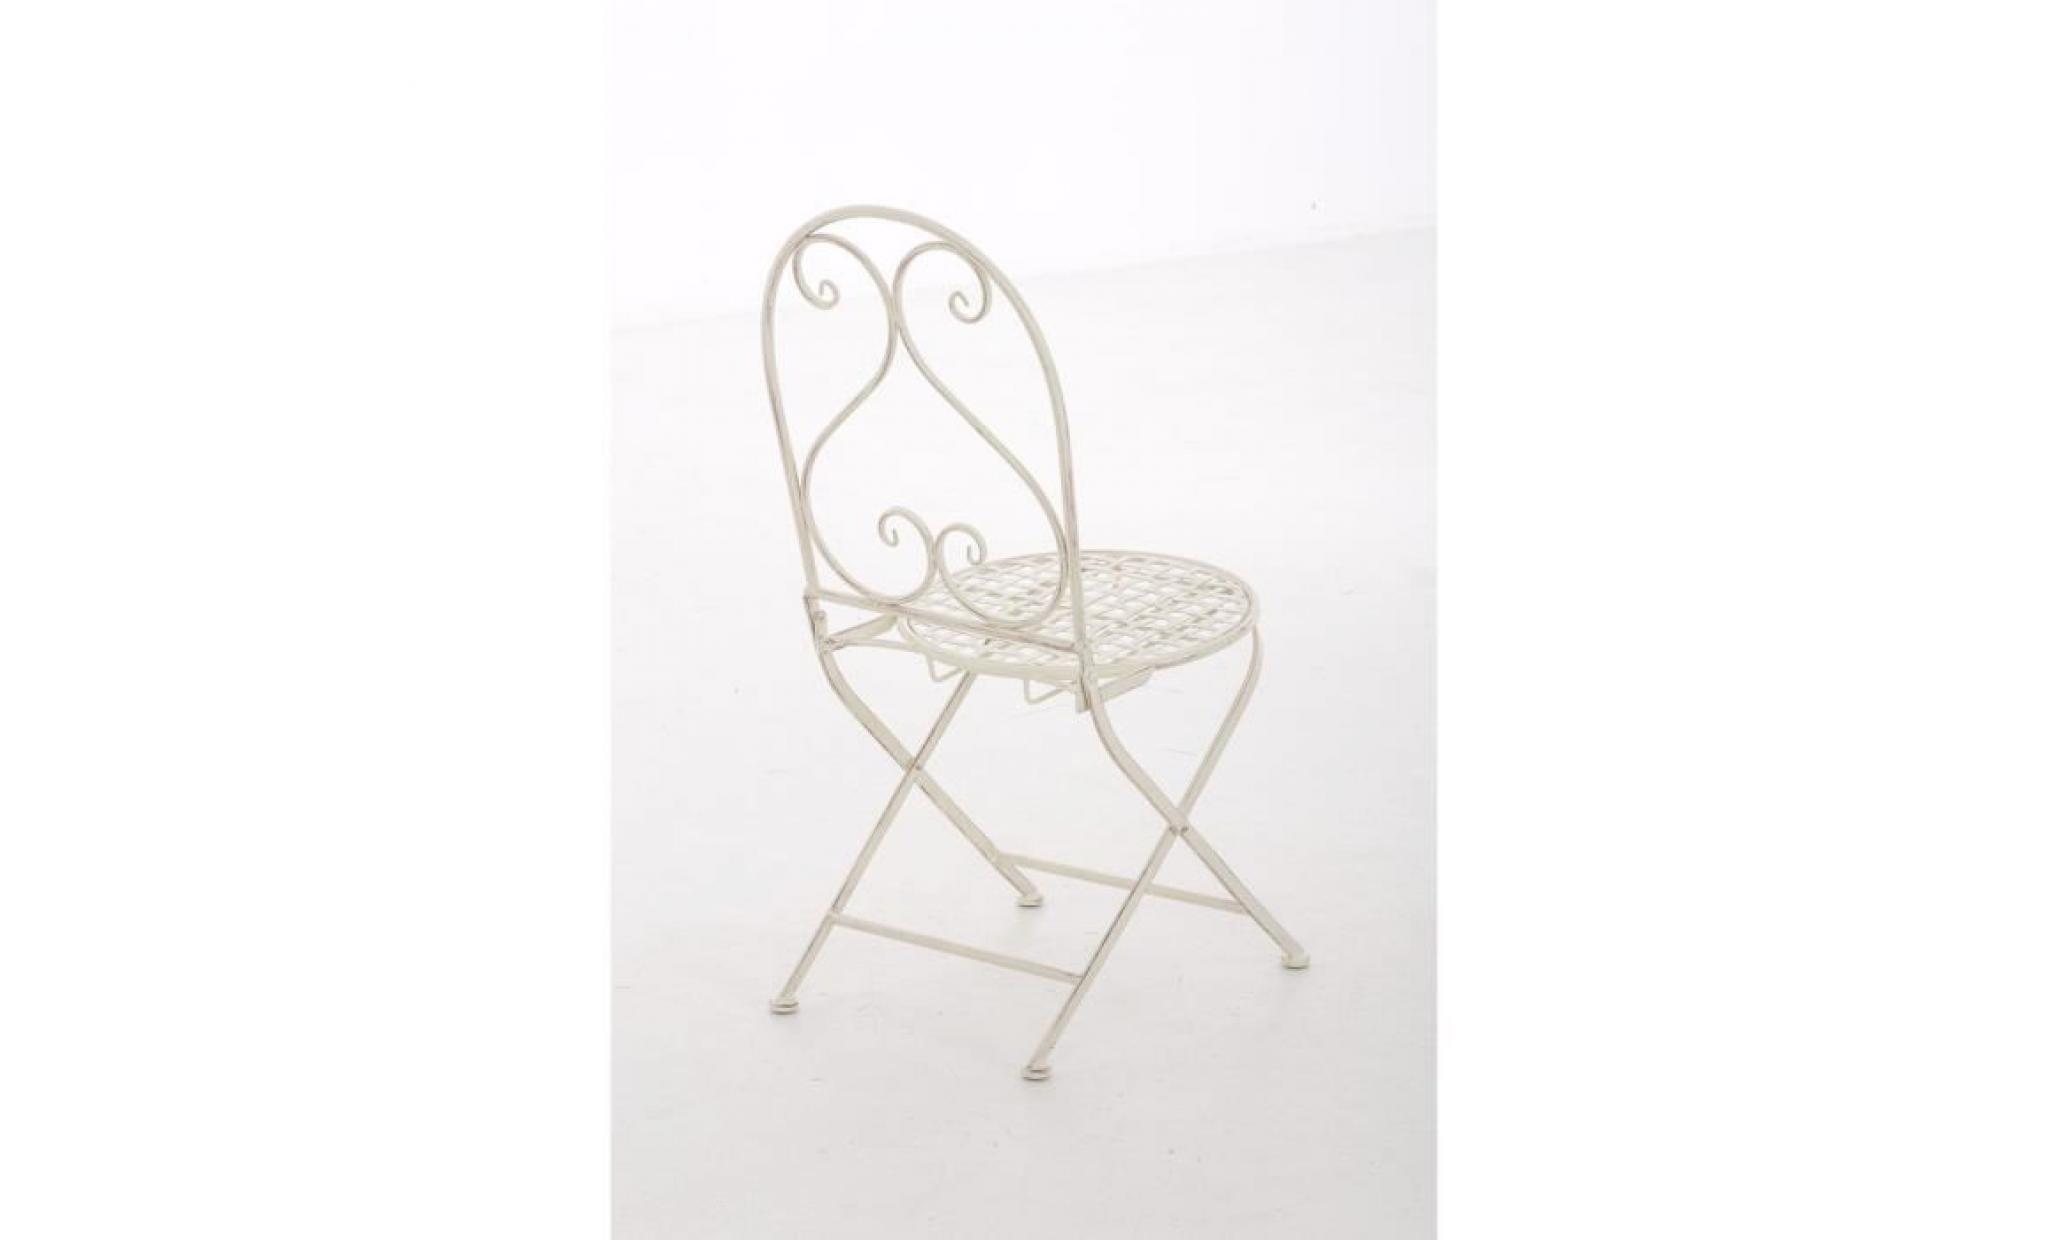 clp chaise nostalgique pliable vahan loraville, en fer forgé, chaise en fer style nostalgique, ultra élégant, 6 couleurs au choix pas cher